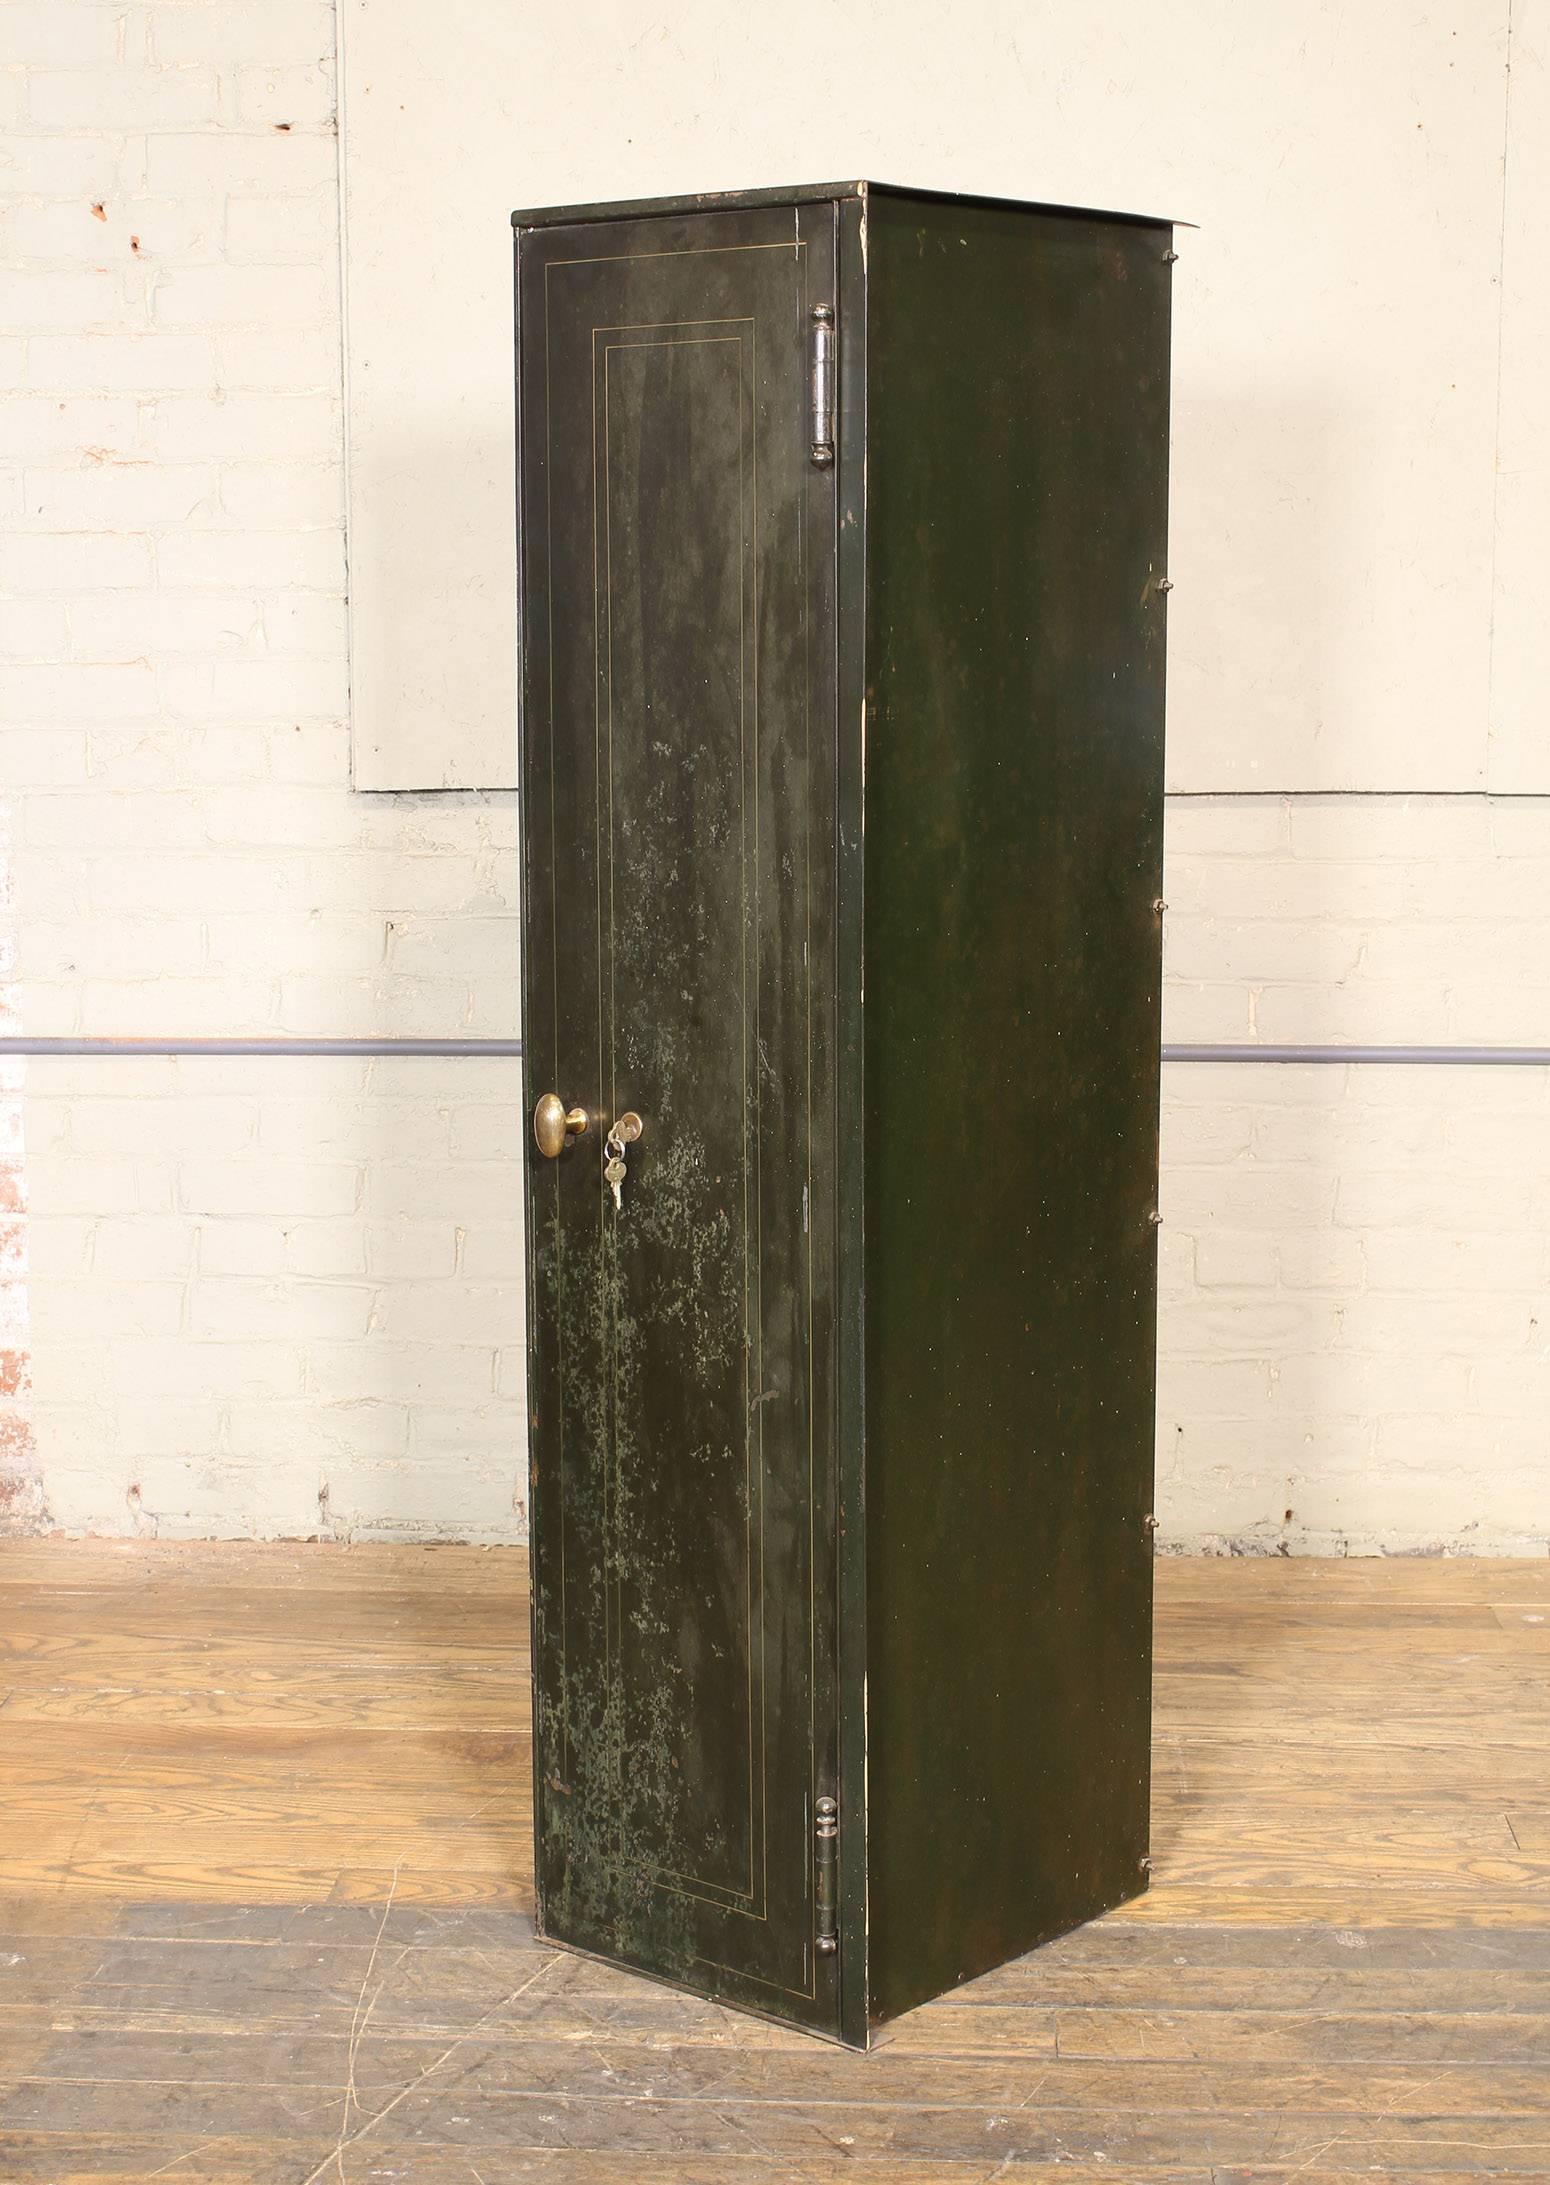 Vintage metal, steel distressed storage locker with lock and key and brass handle. Depth measures 16 1/8